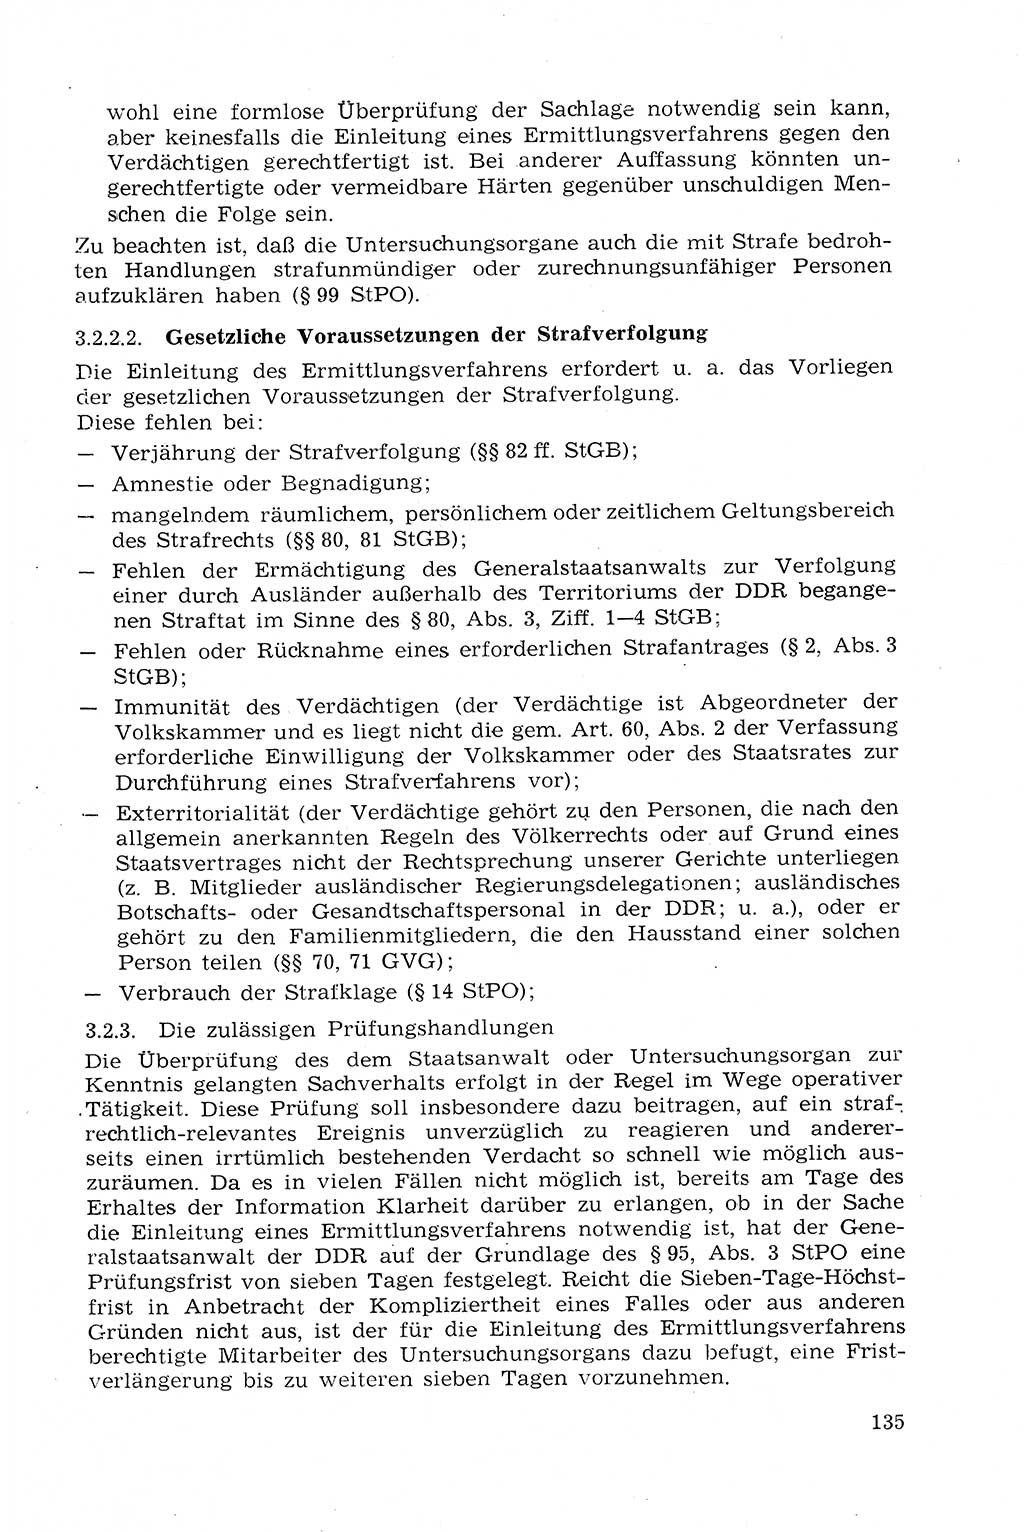 Strafprozeßrecht der DDR (Deutsche Demokratische Republik), Lehrmaterial 1969, Seite 135 (Strafprozeßr. DDR Lehrmat. 1969, S. 135)